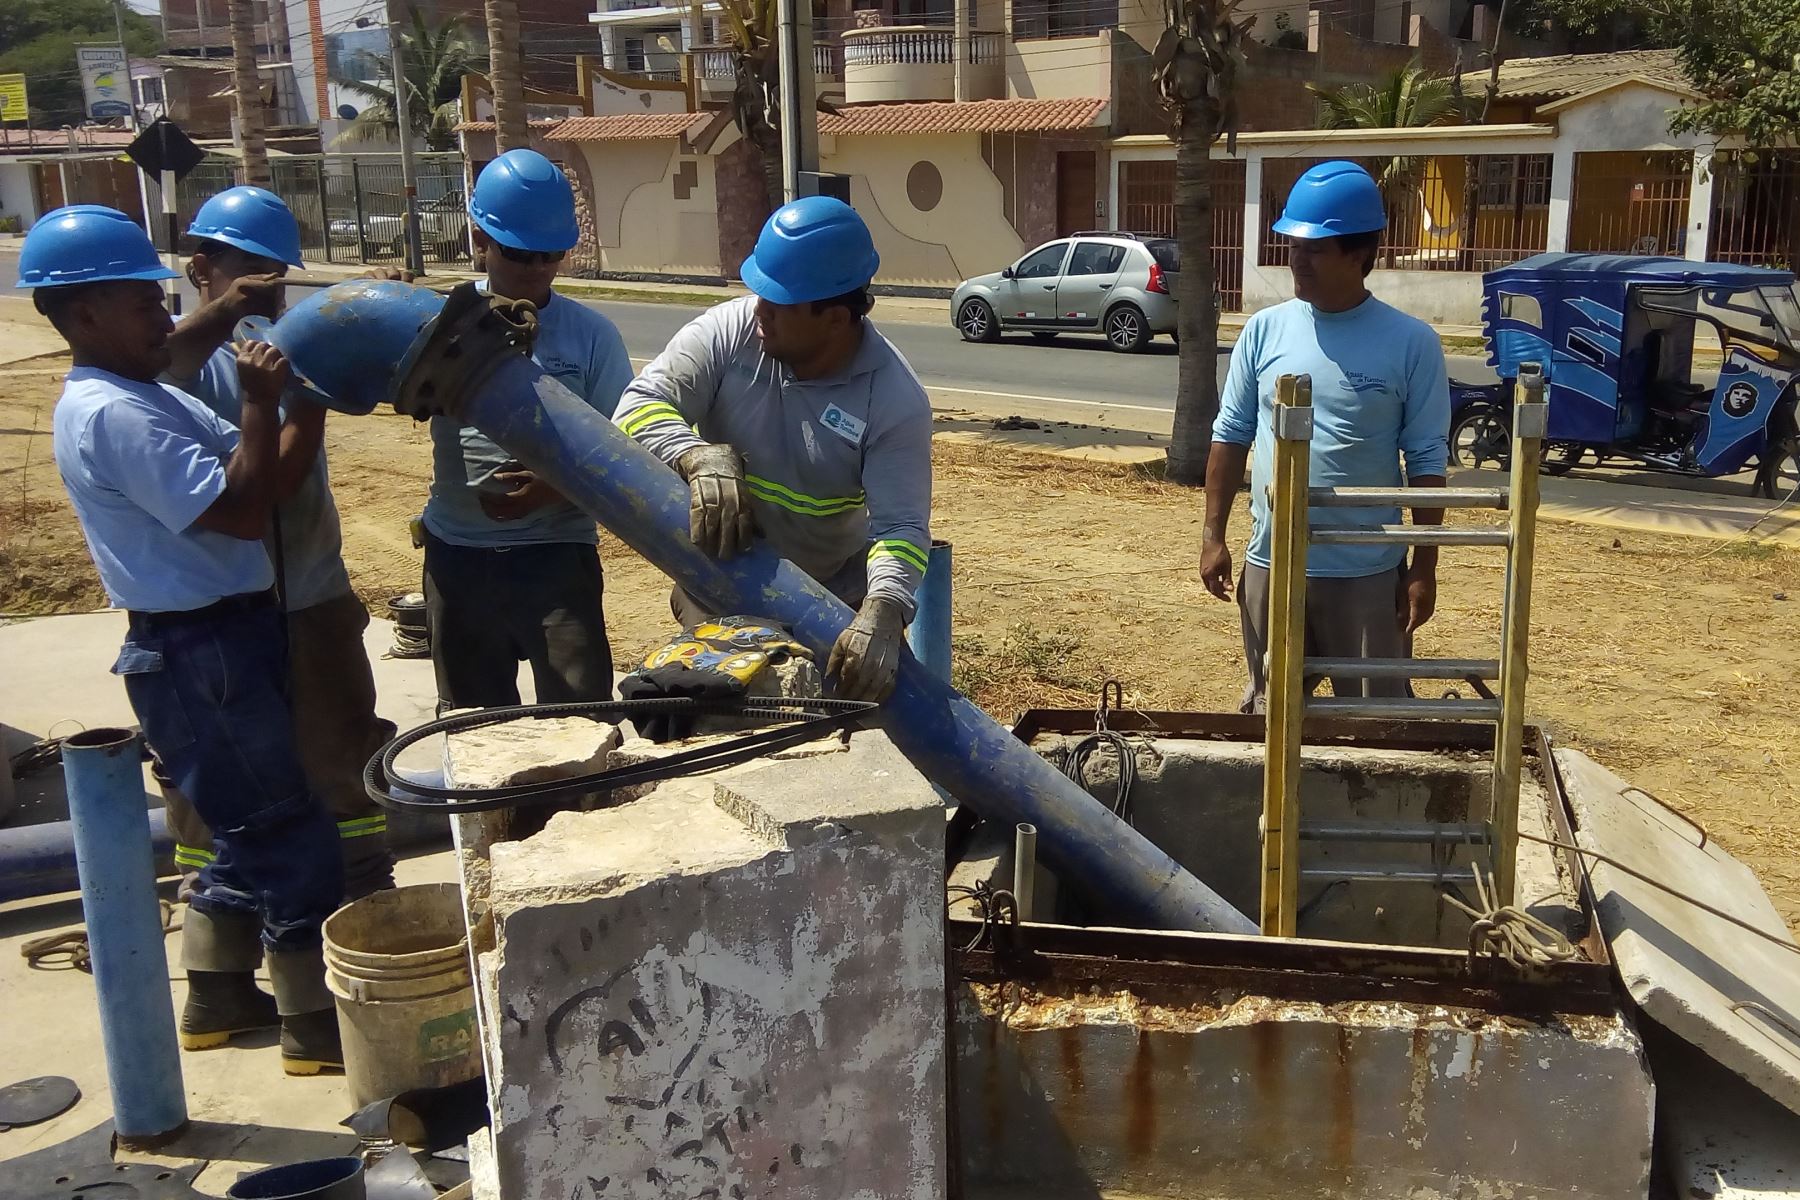 Agua Tumbes repondrá siete electrobombas y limpiará las cámaras de bombeo de desagüe, con el fin de optimizar el sistema de alcantarillado del distrito de Zorritos, informó el OTASS.